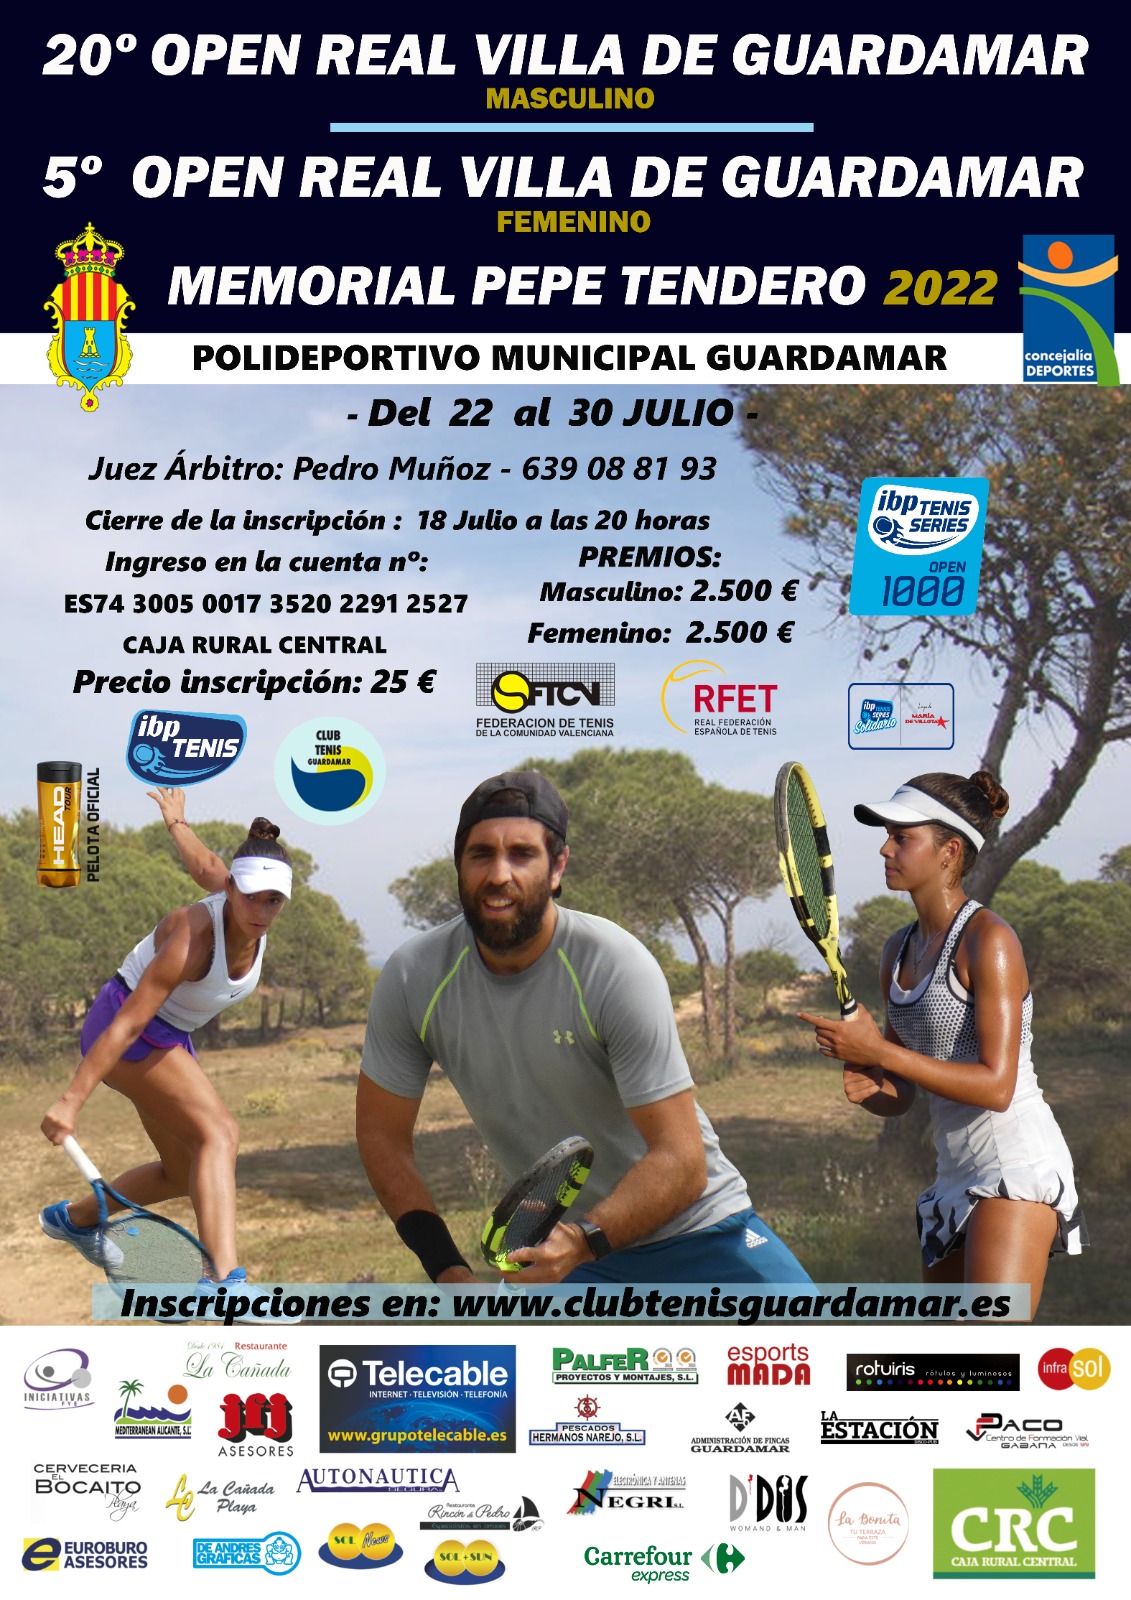 Open Memorial Pepe Tendero